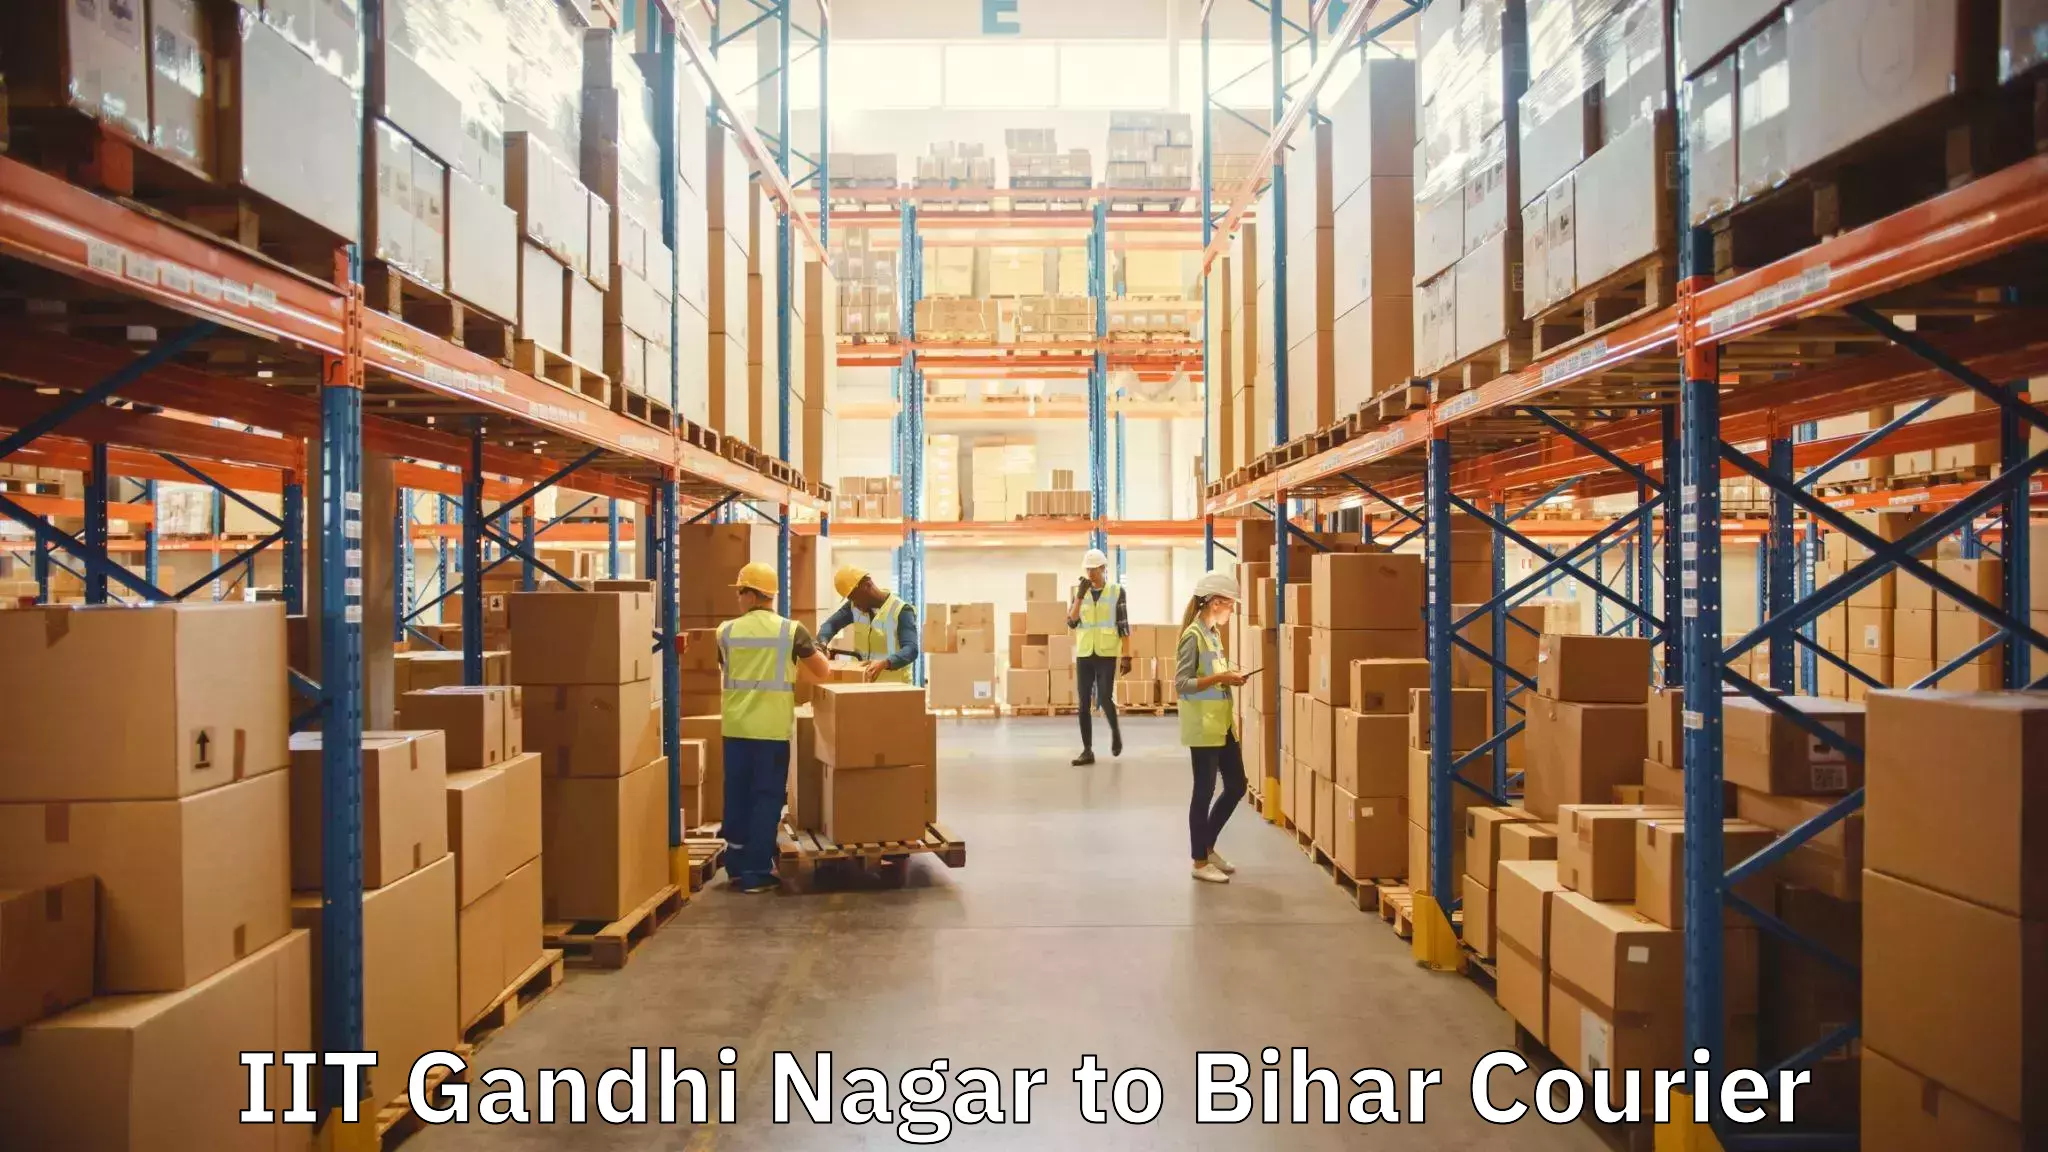 Furniture moving plans IIT Gandhi Nagar to Bihar